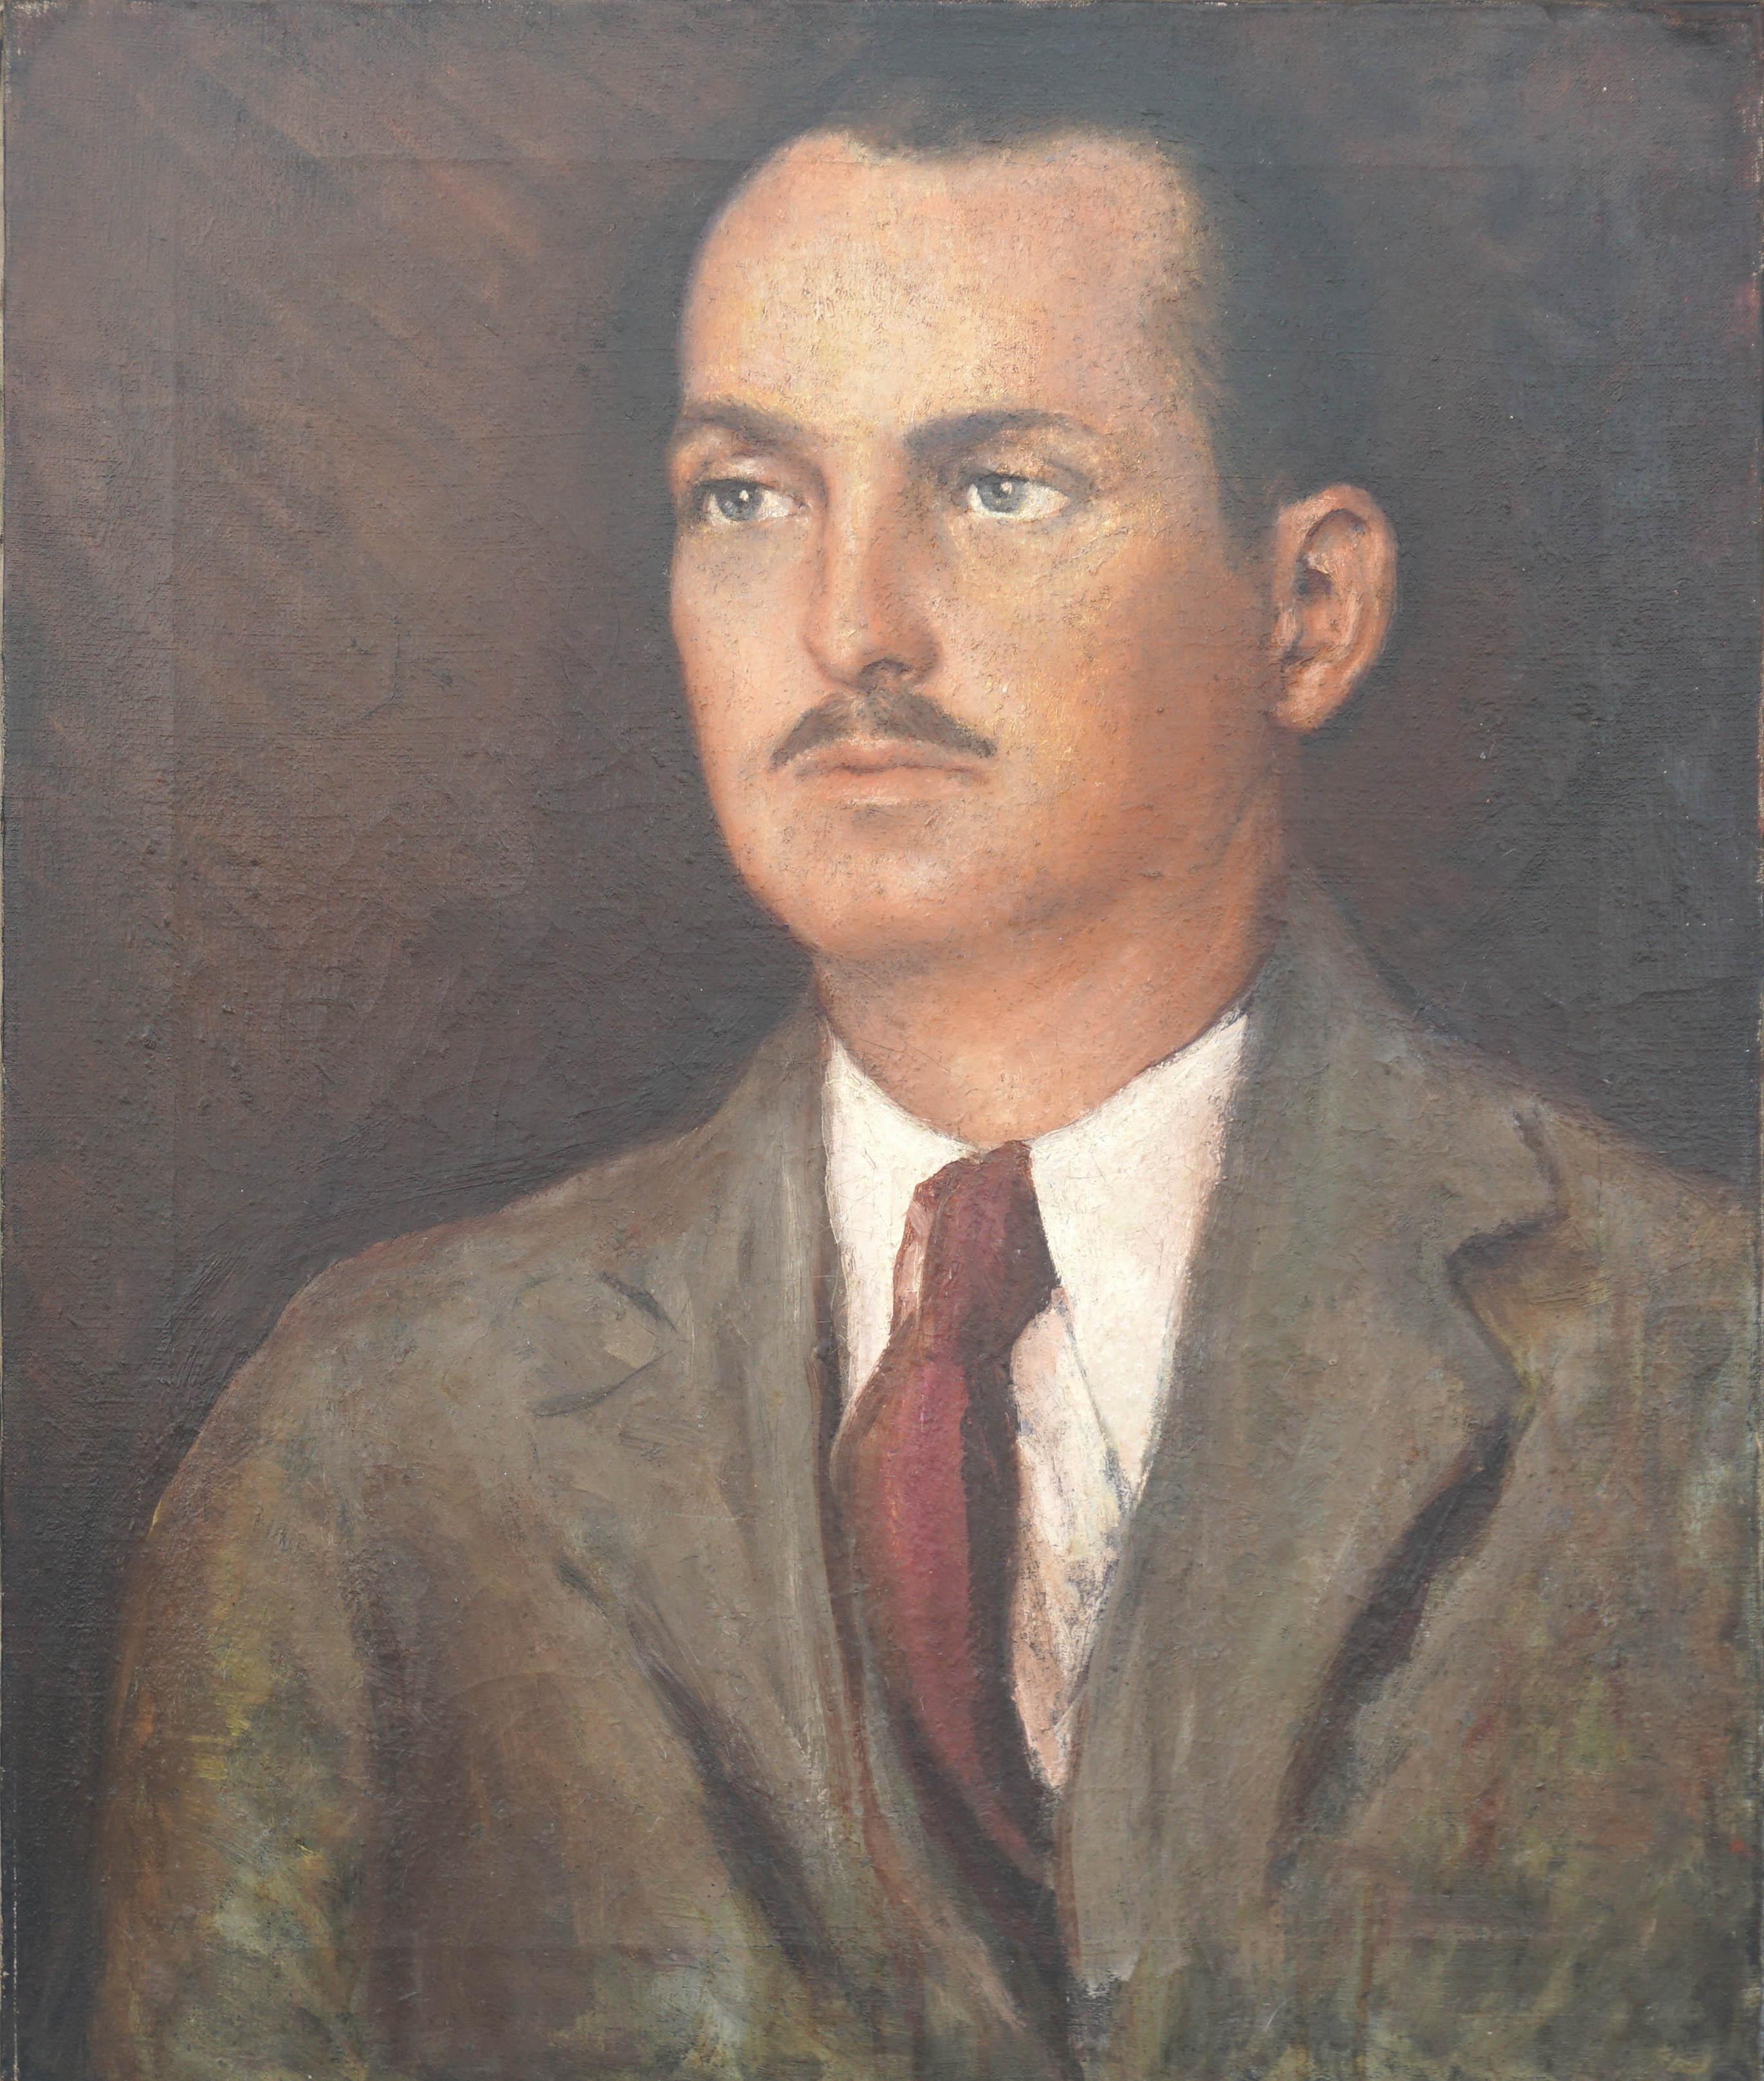 Unknown Portrait Painting – Porträt eines Mannes – Ähnliches von Django Reinhardt